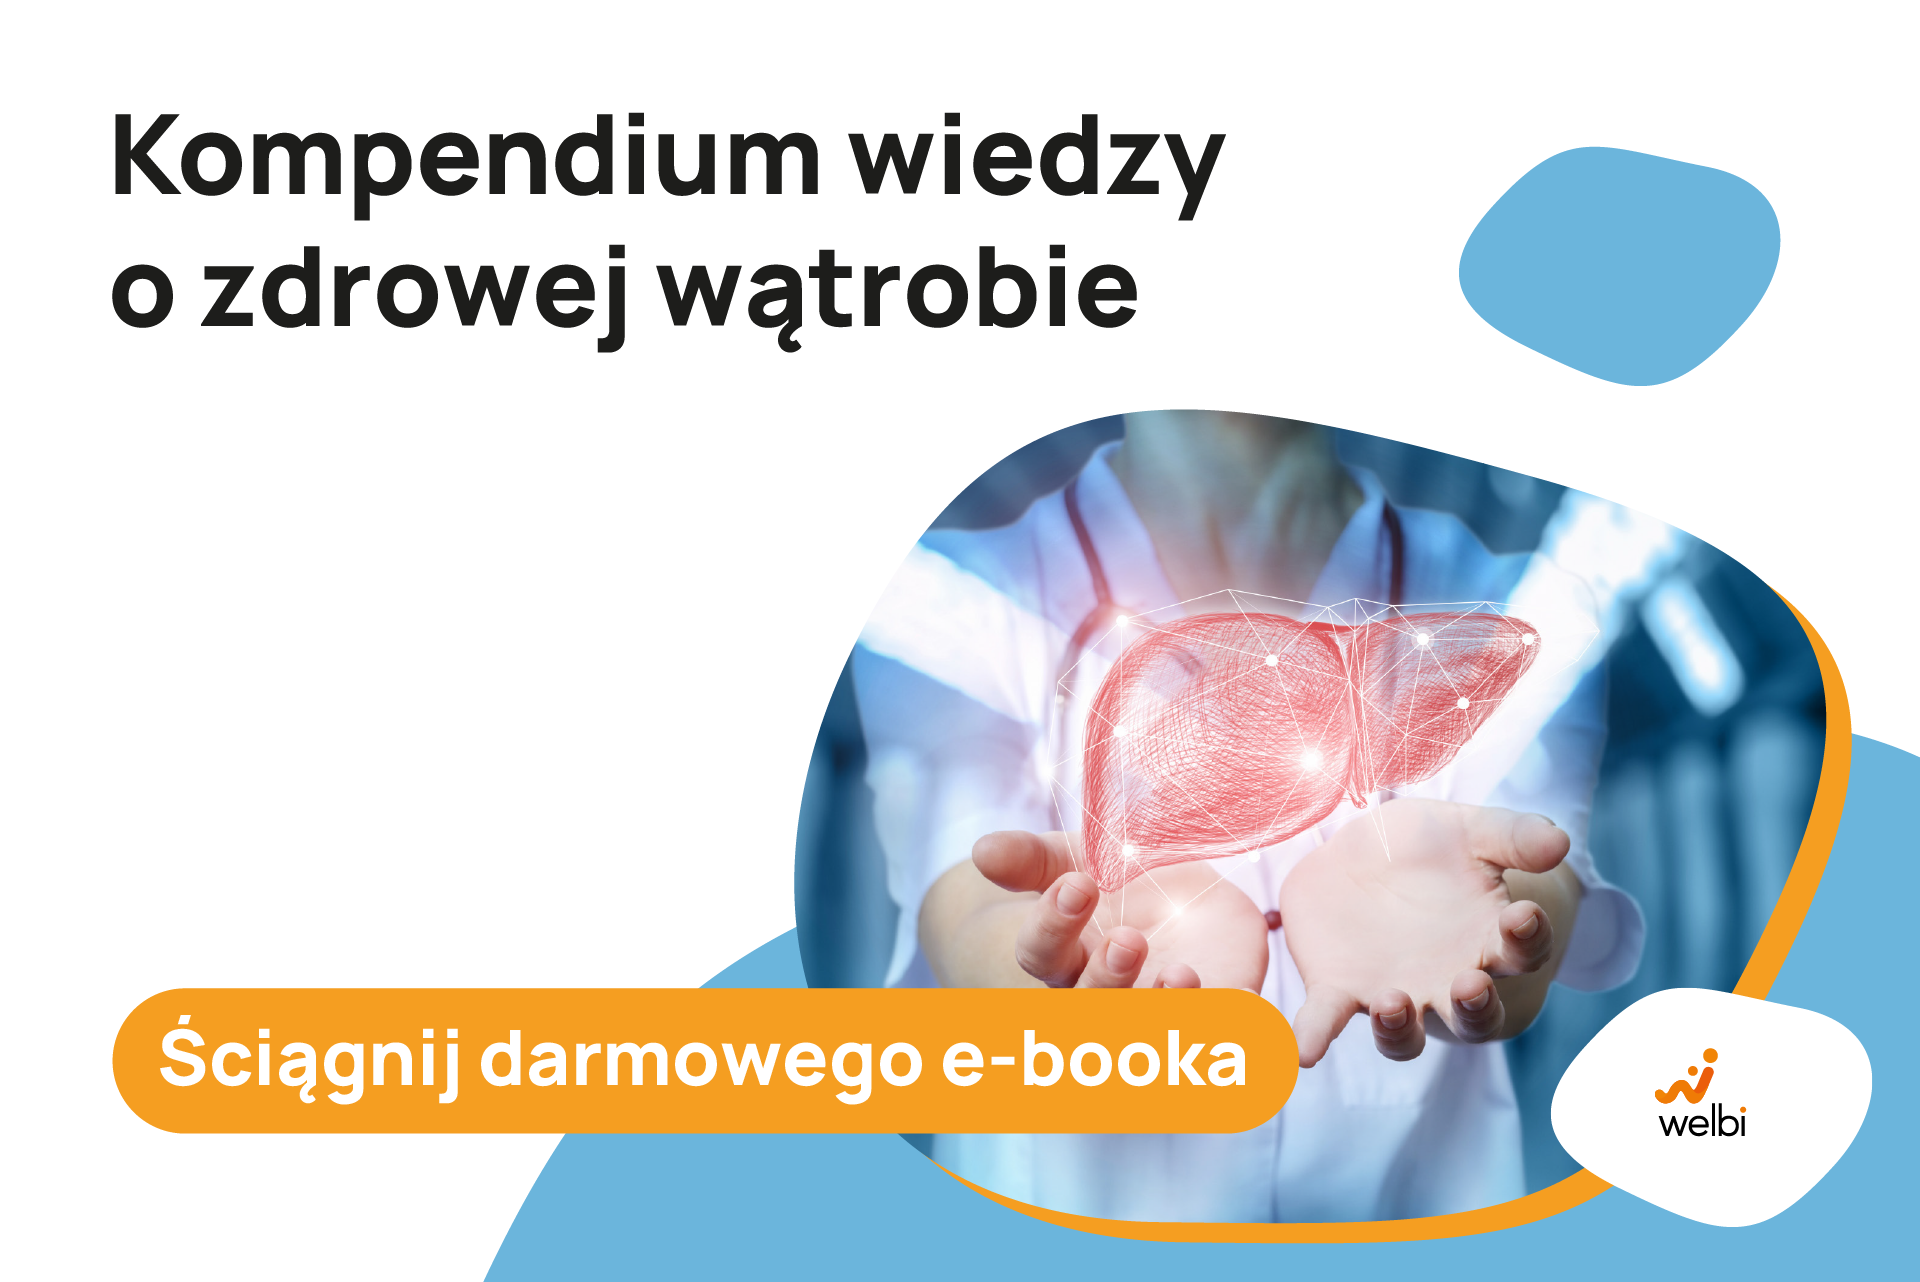 kompendium-wiedzy-o-watrobie-pobierz-darmowego-e-booka